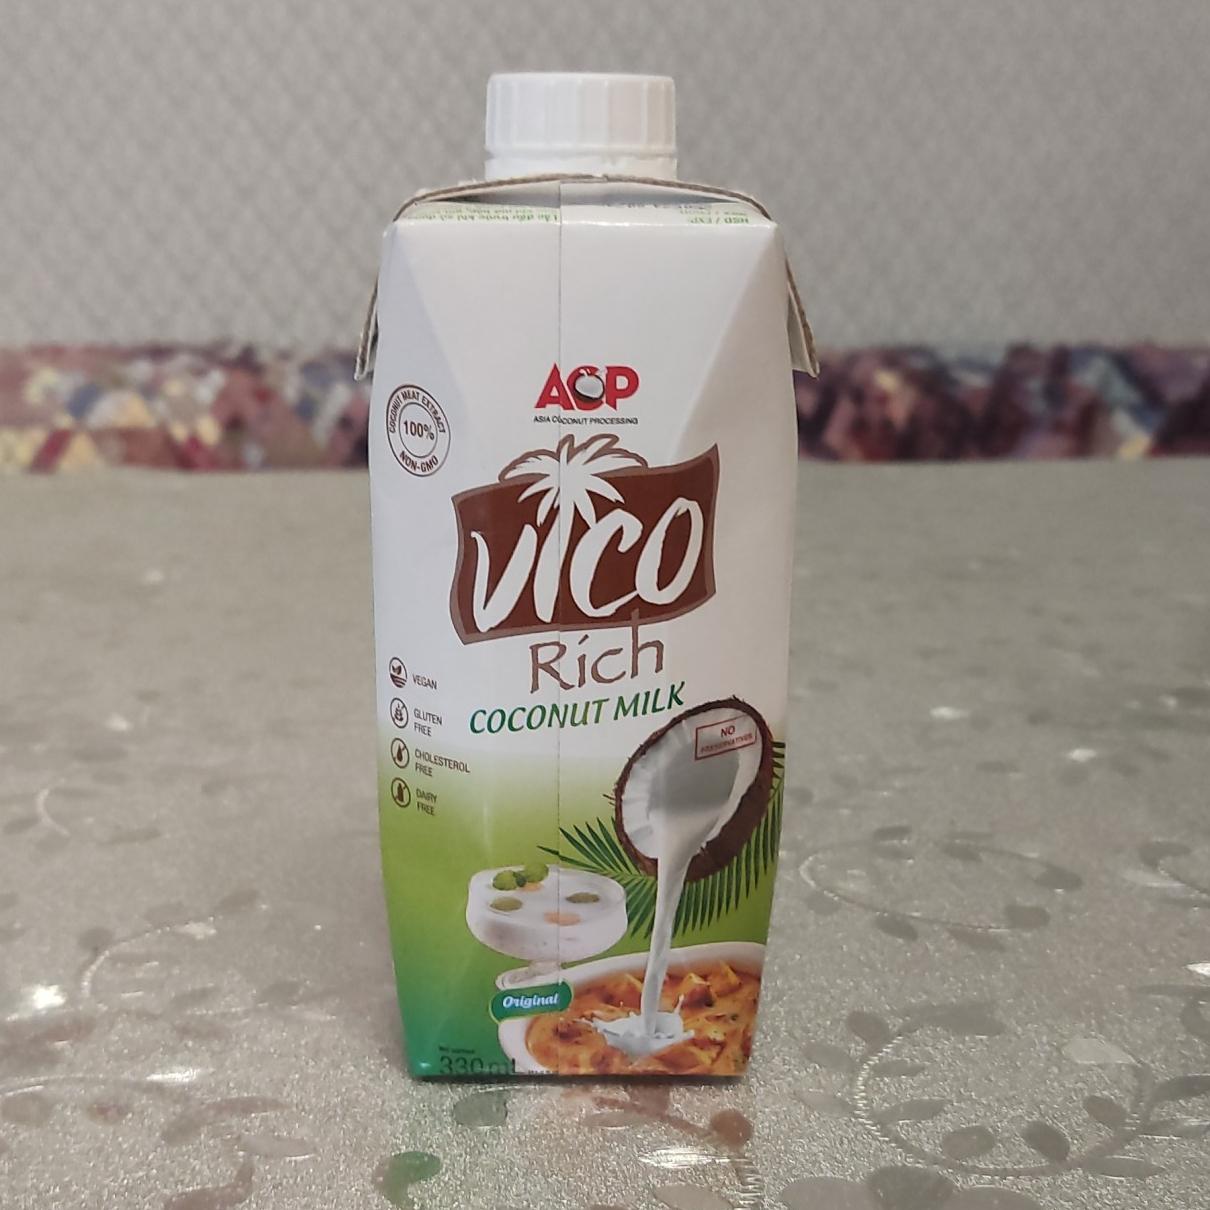 Фото - Насыщенное кокосовое молоко Rich Nuoc cot dua Vico ВИКО ACP